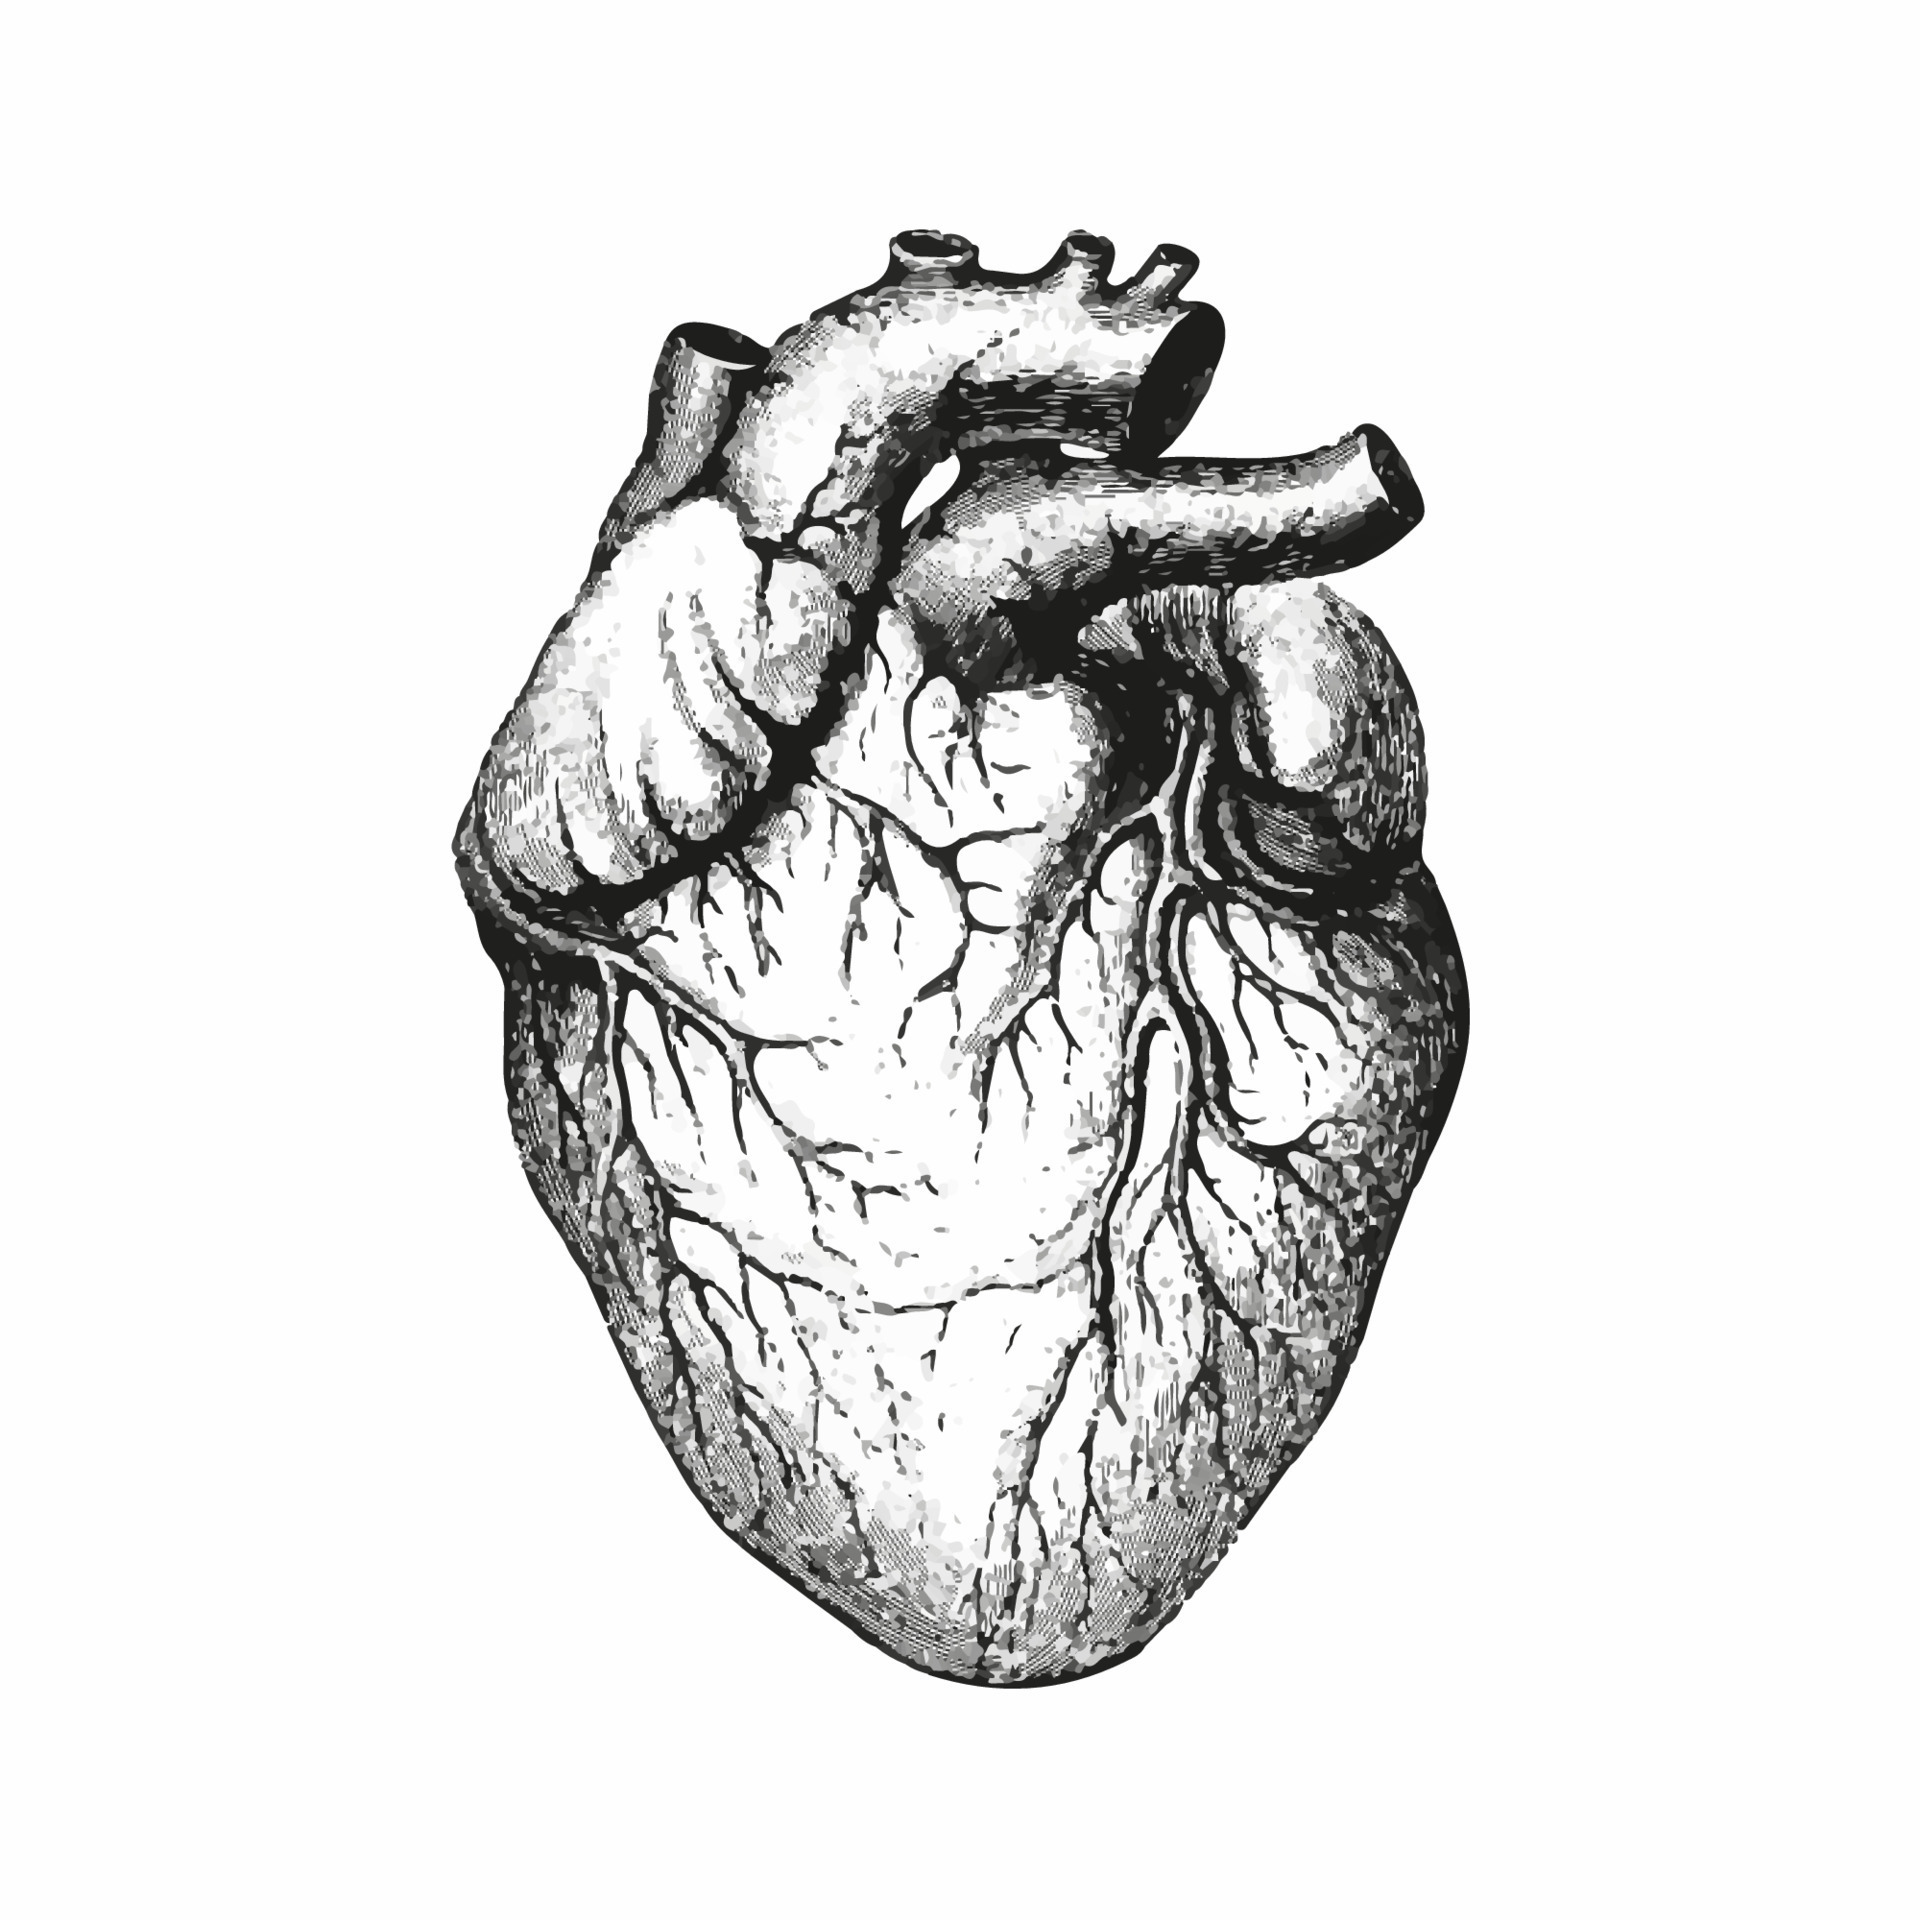 Original Small Heart Drawing - Etsy Canada-saigonsouth.com.vn